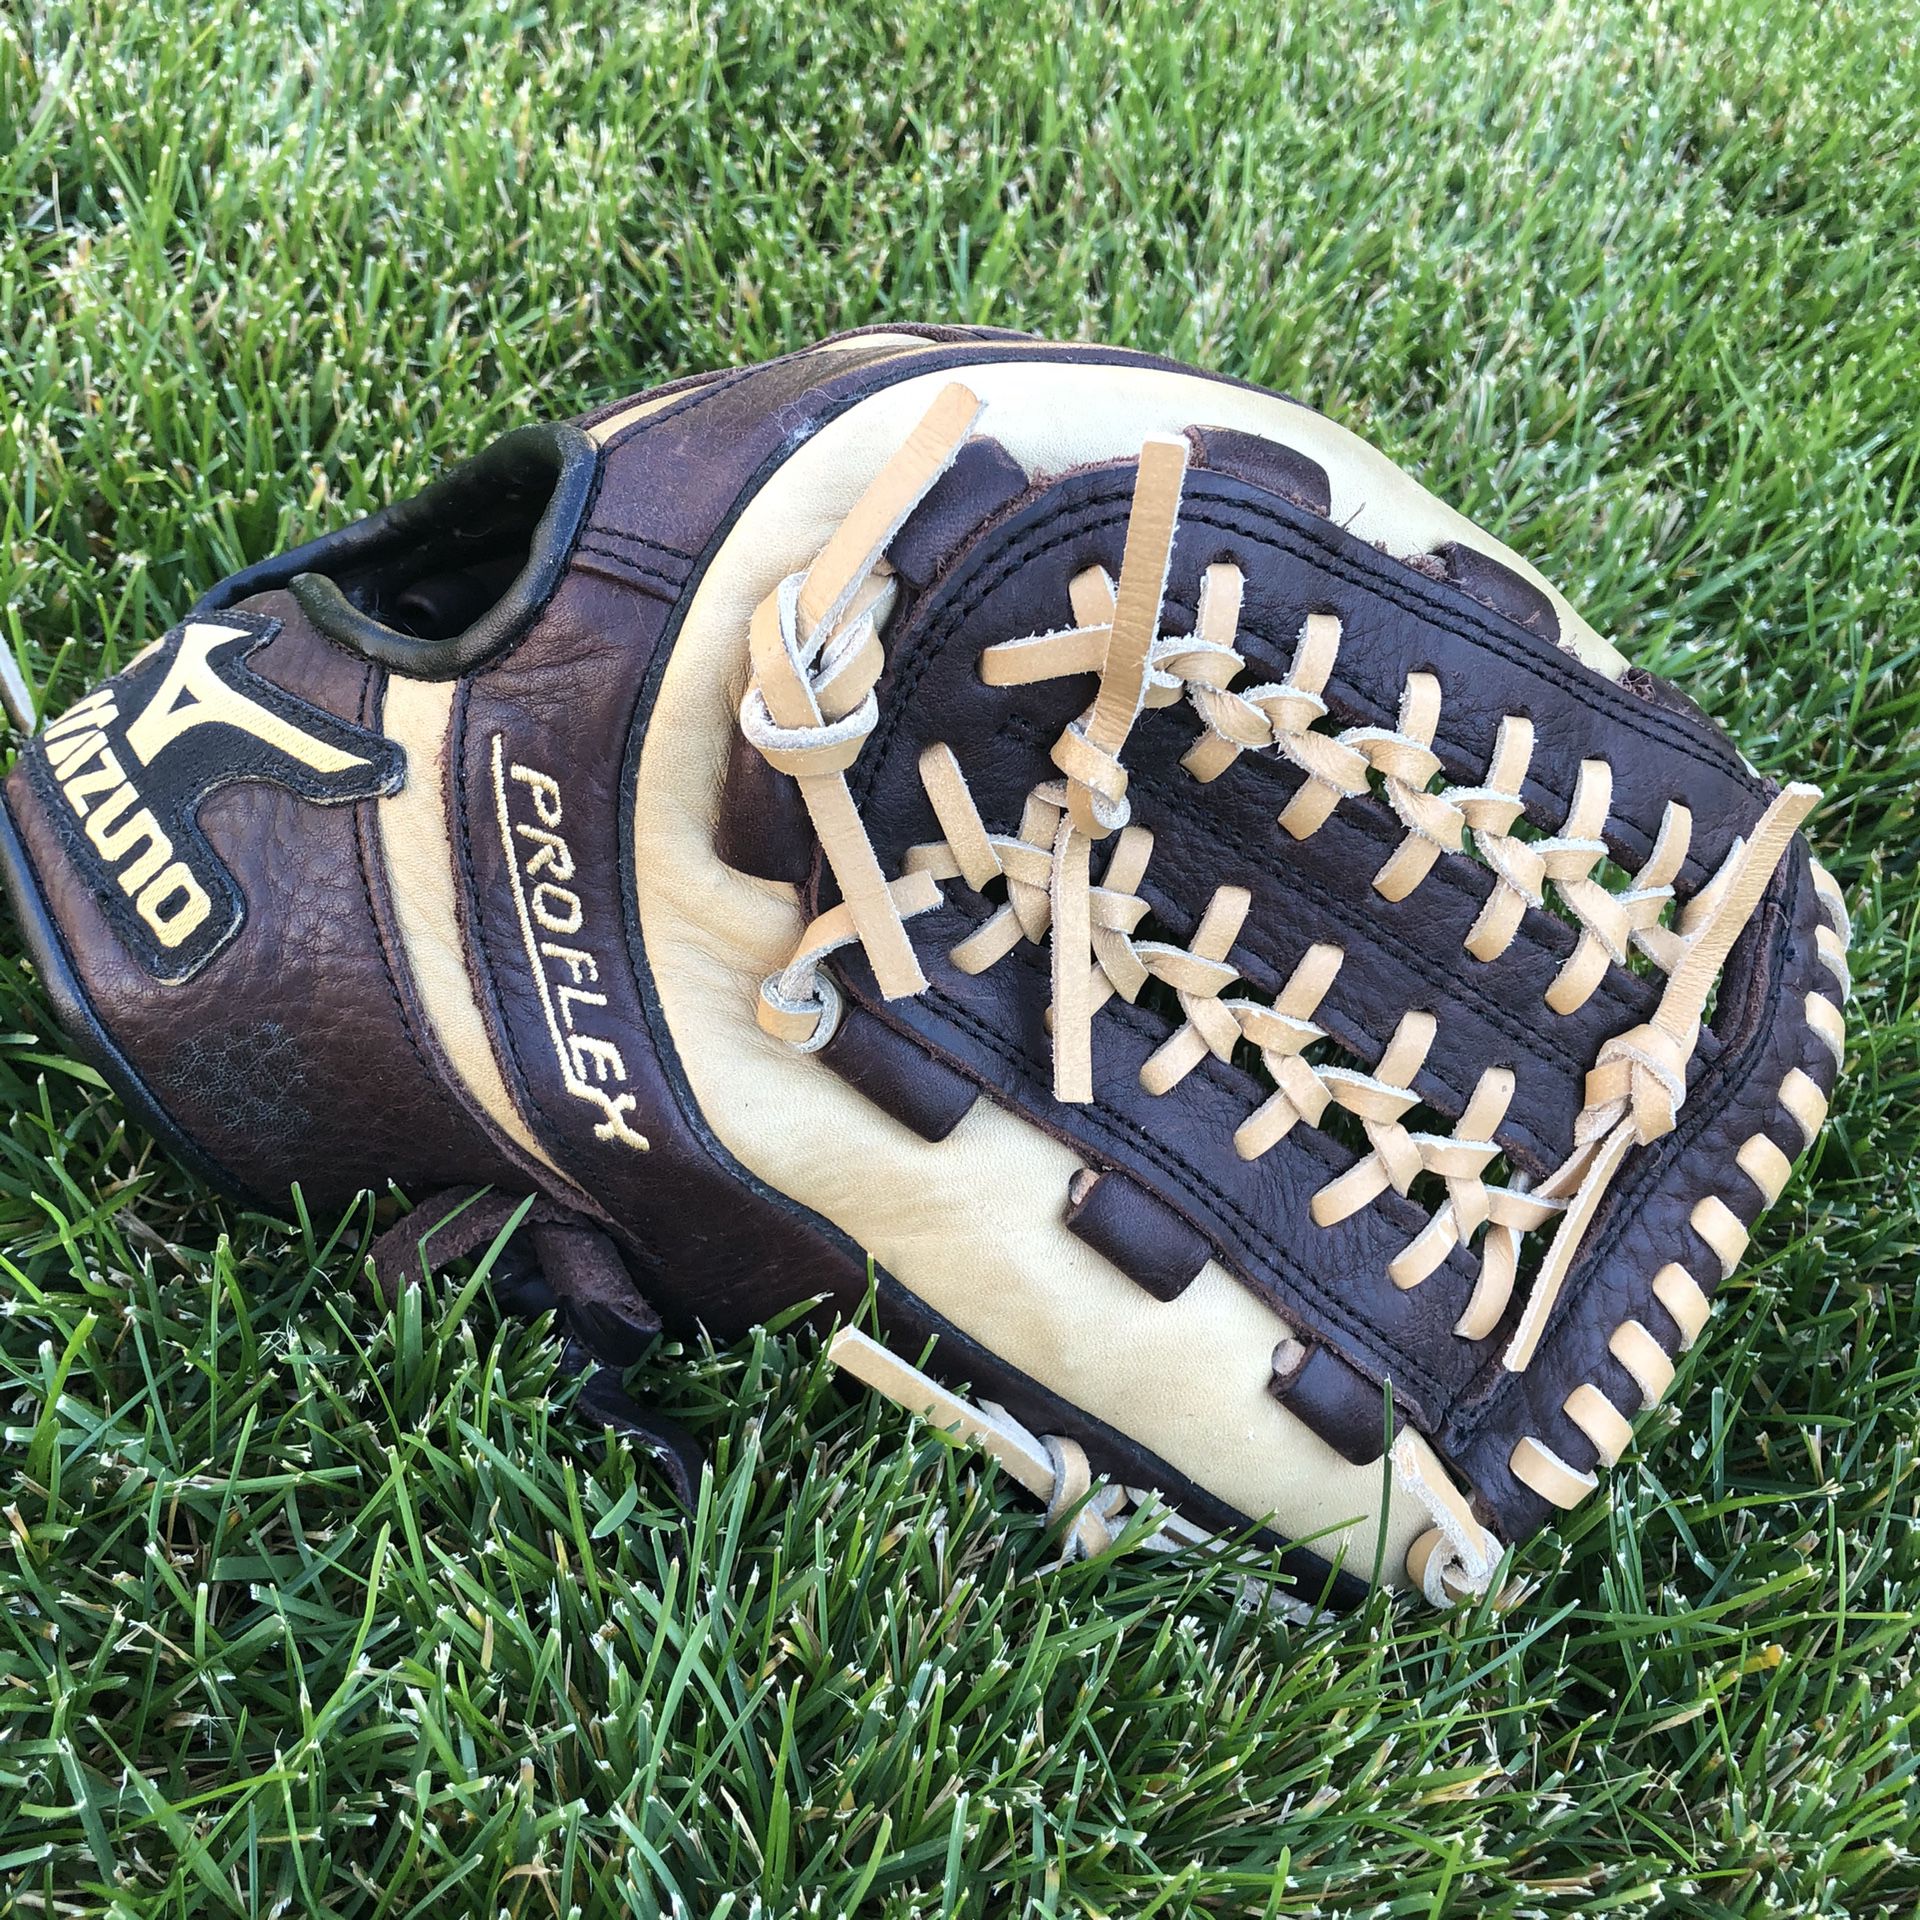 Mizuno 11.75” RHT Baseball Glove